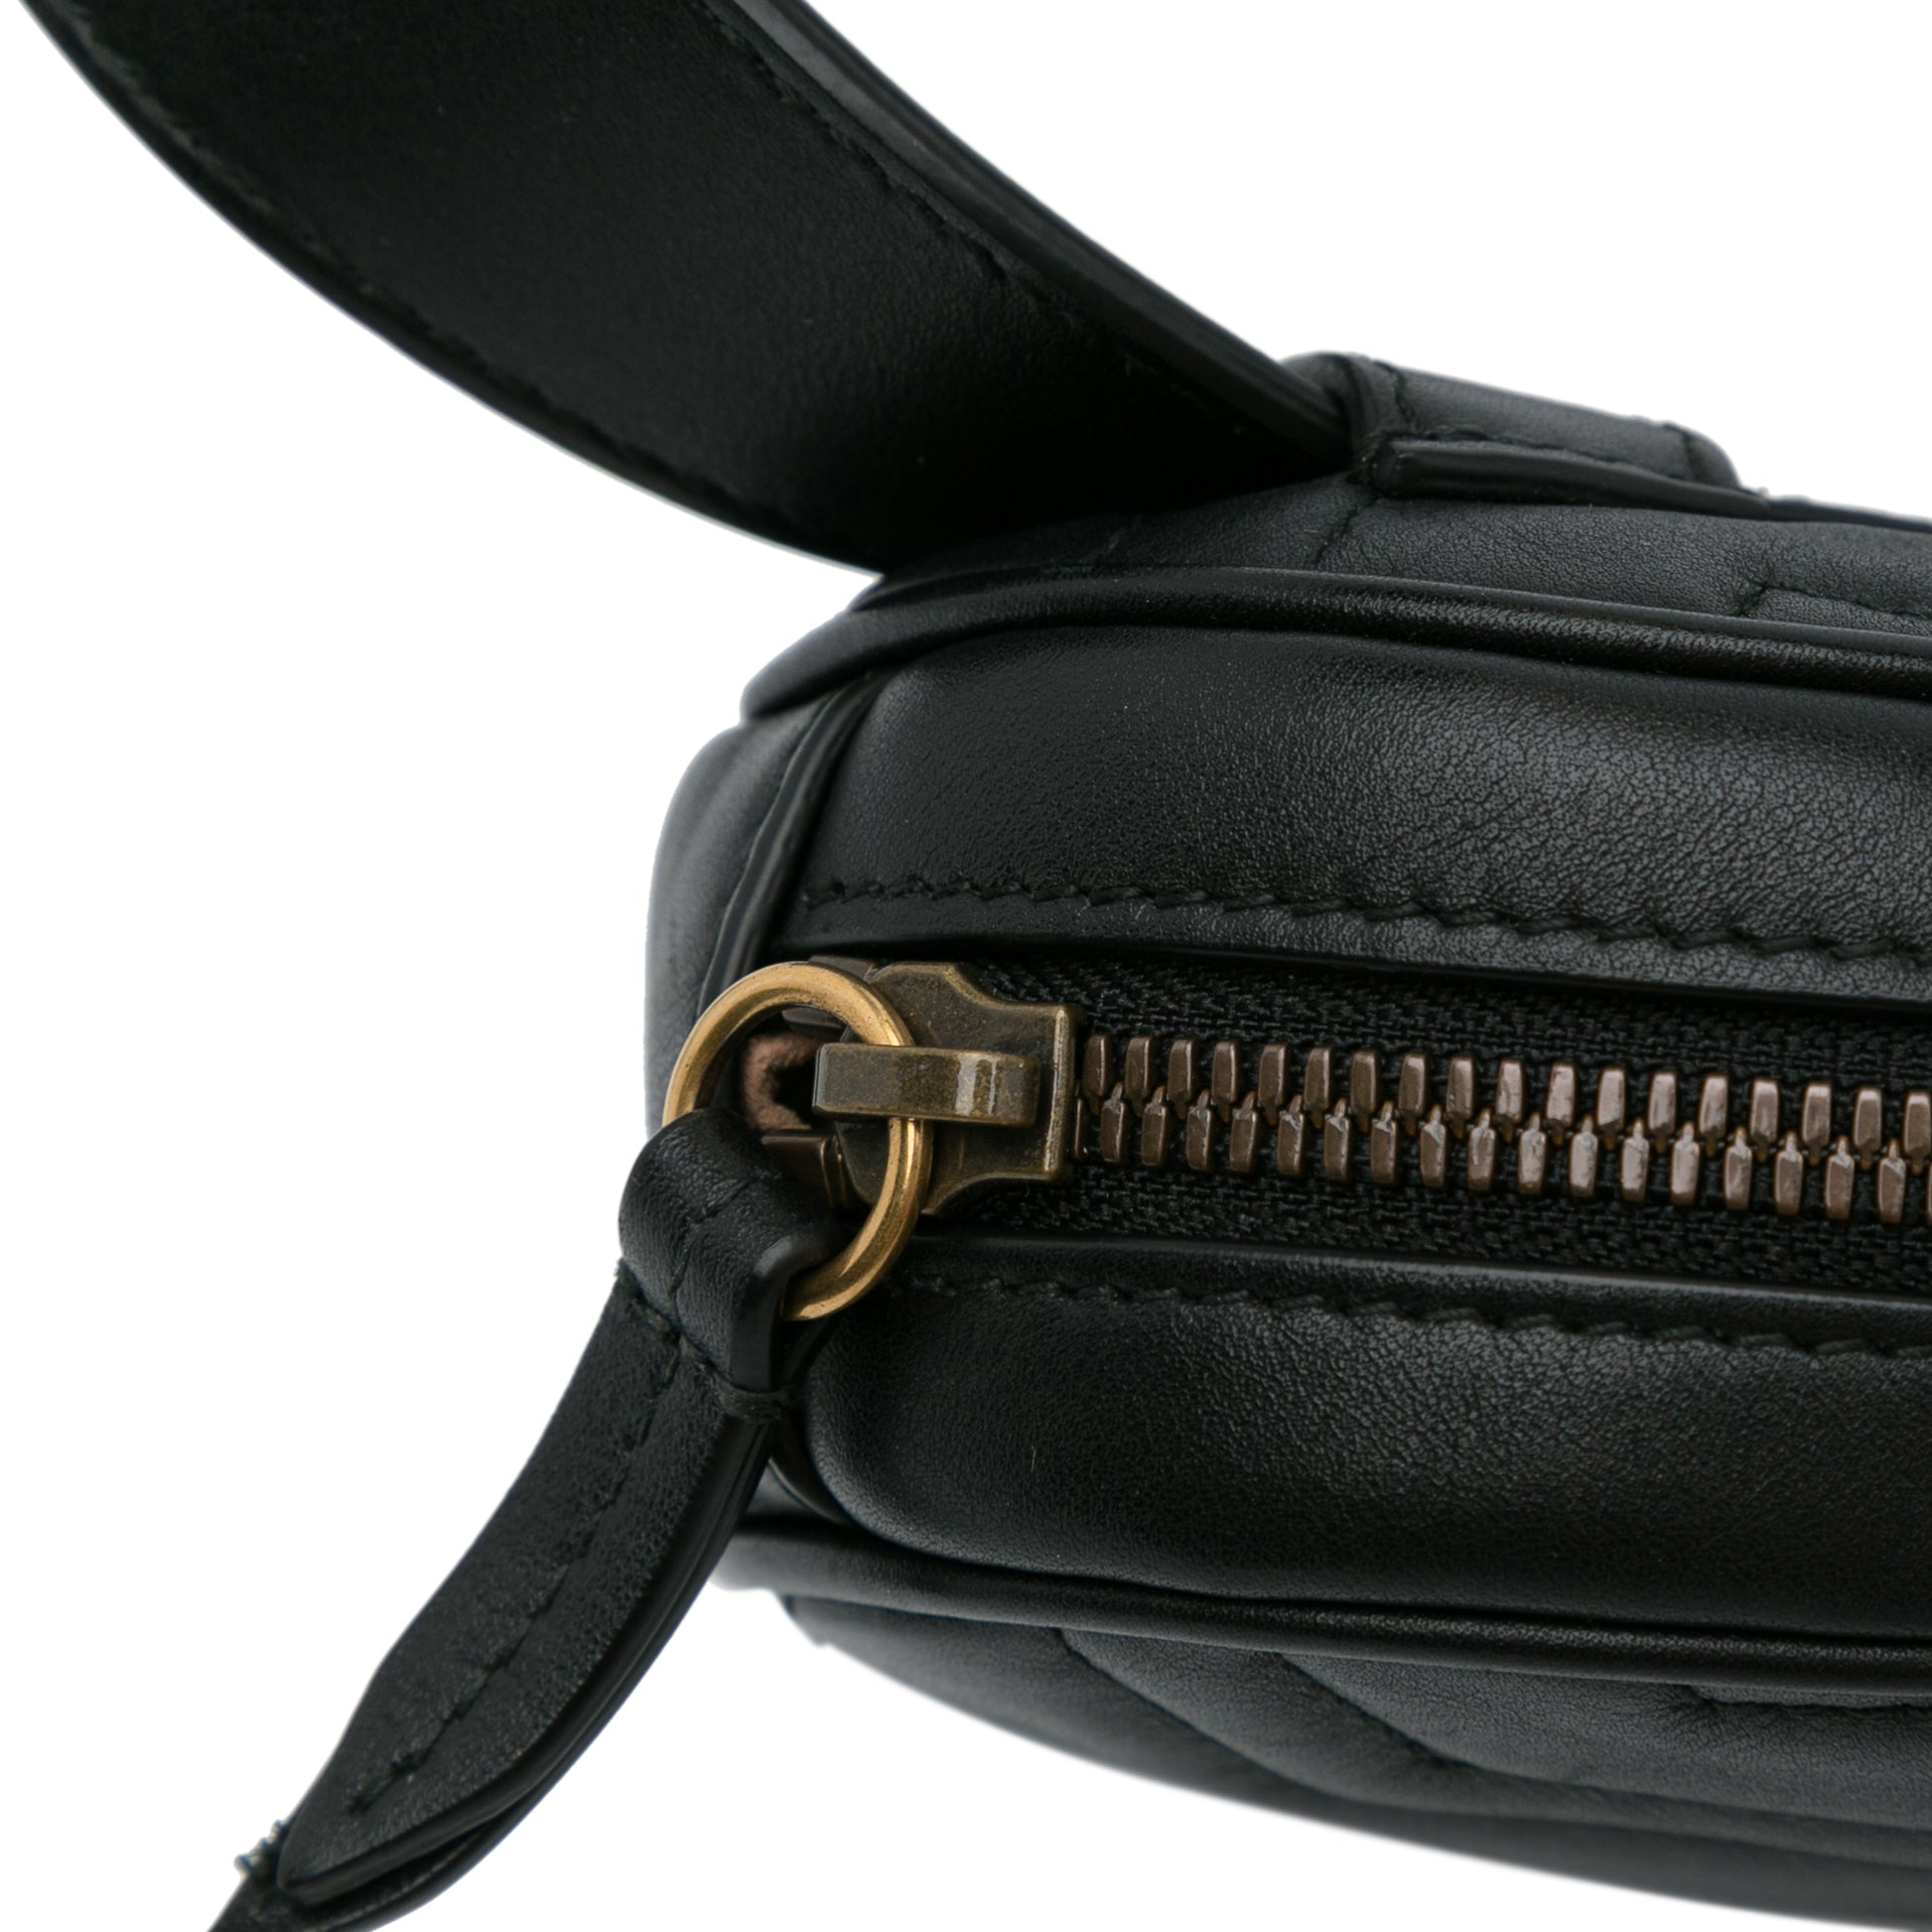 GG Marmont Matelasse Belt Bag Black - Yeahllow